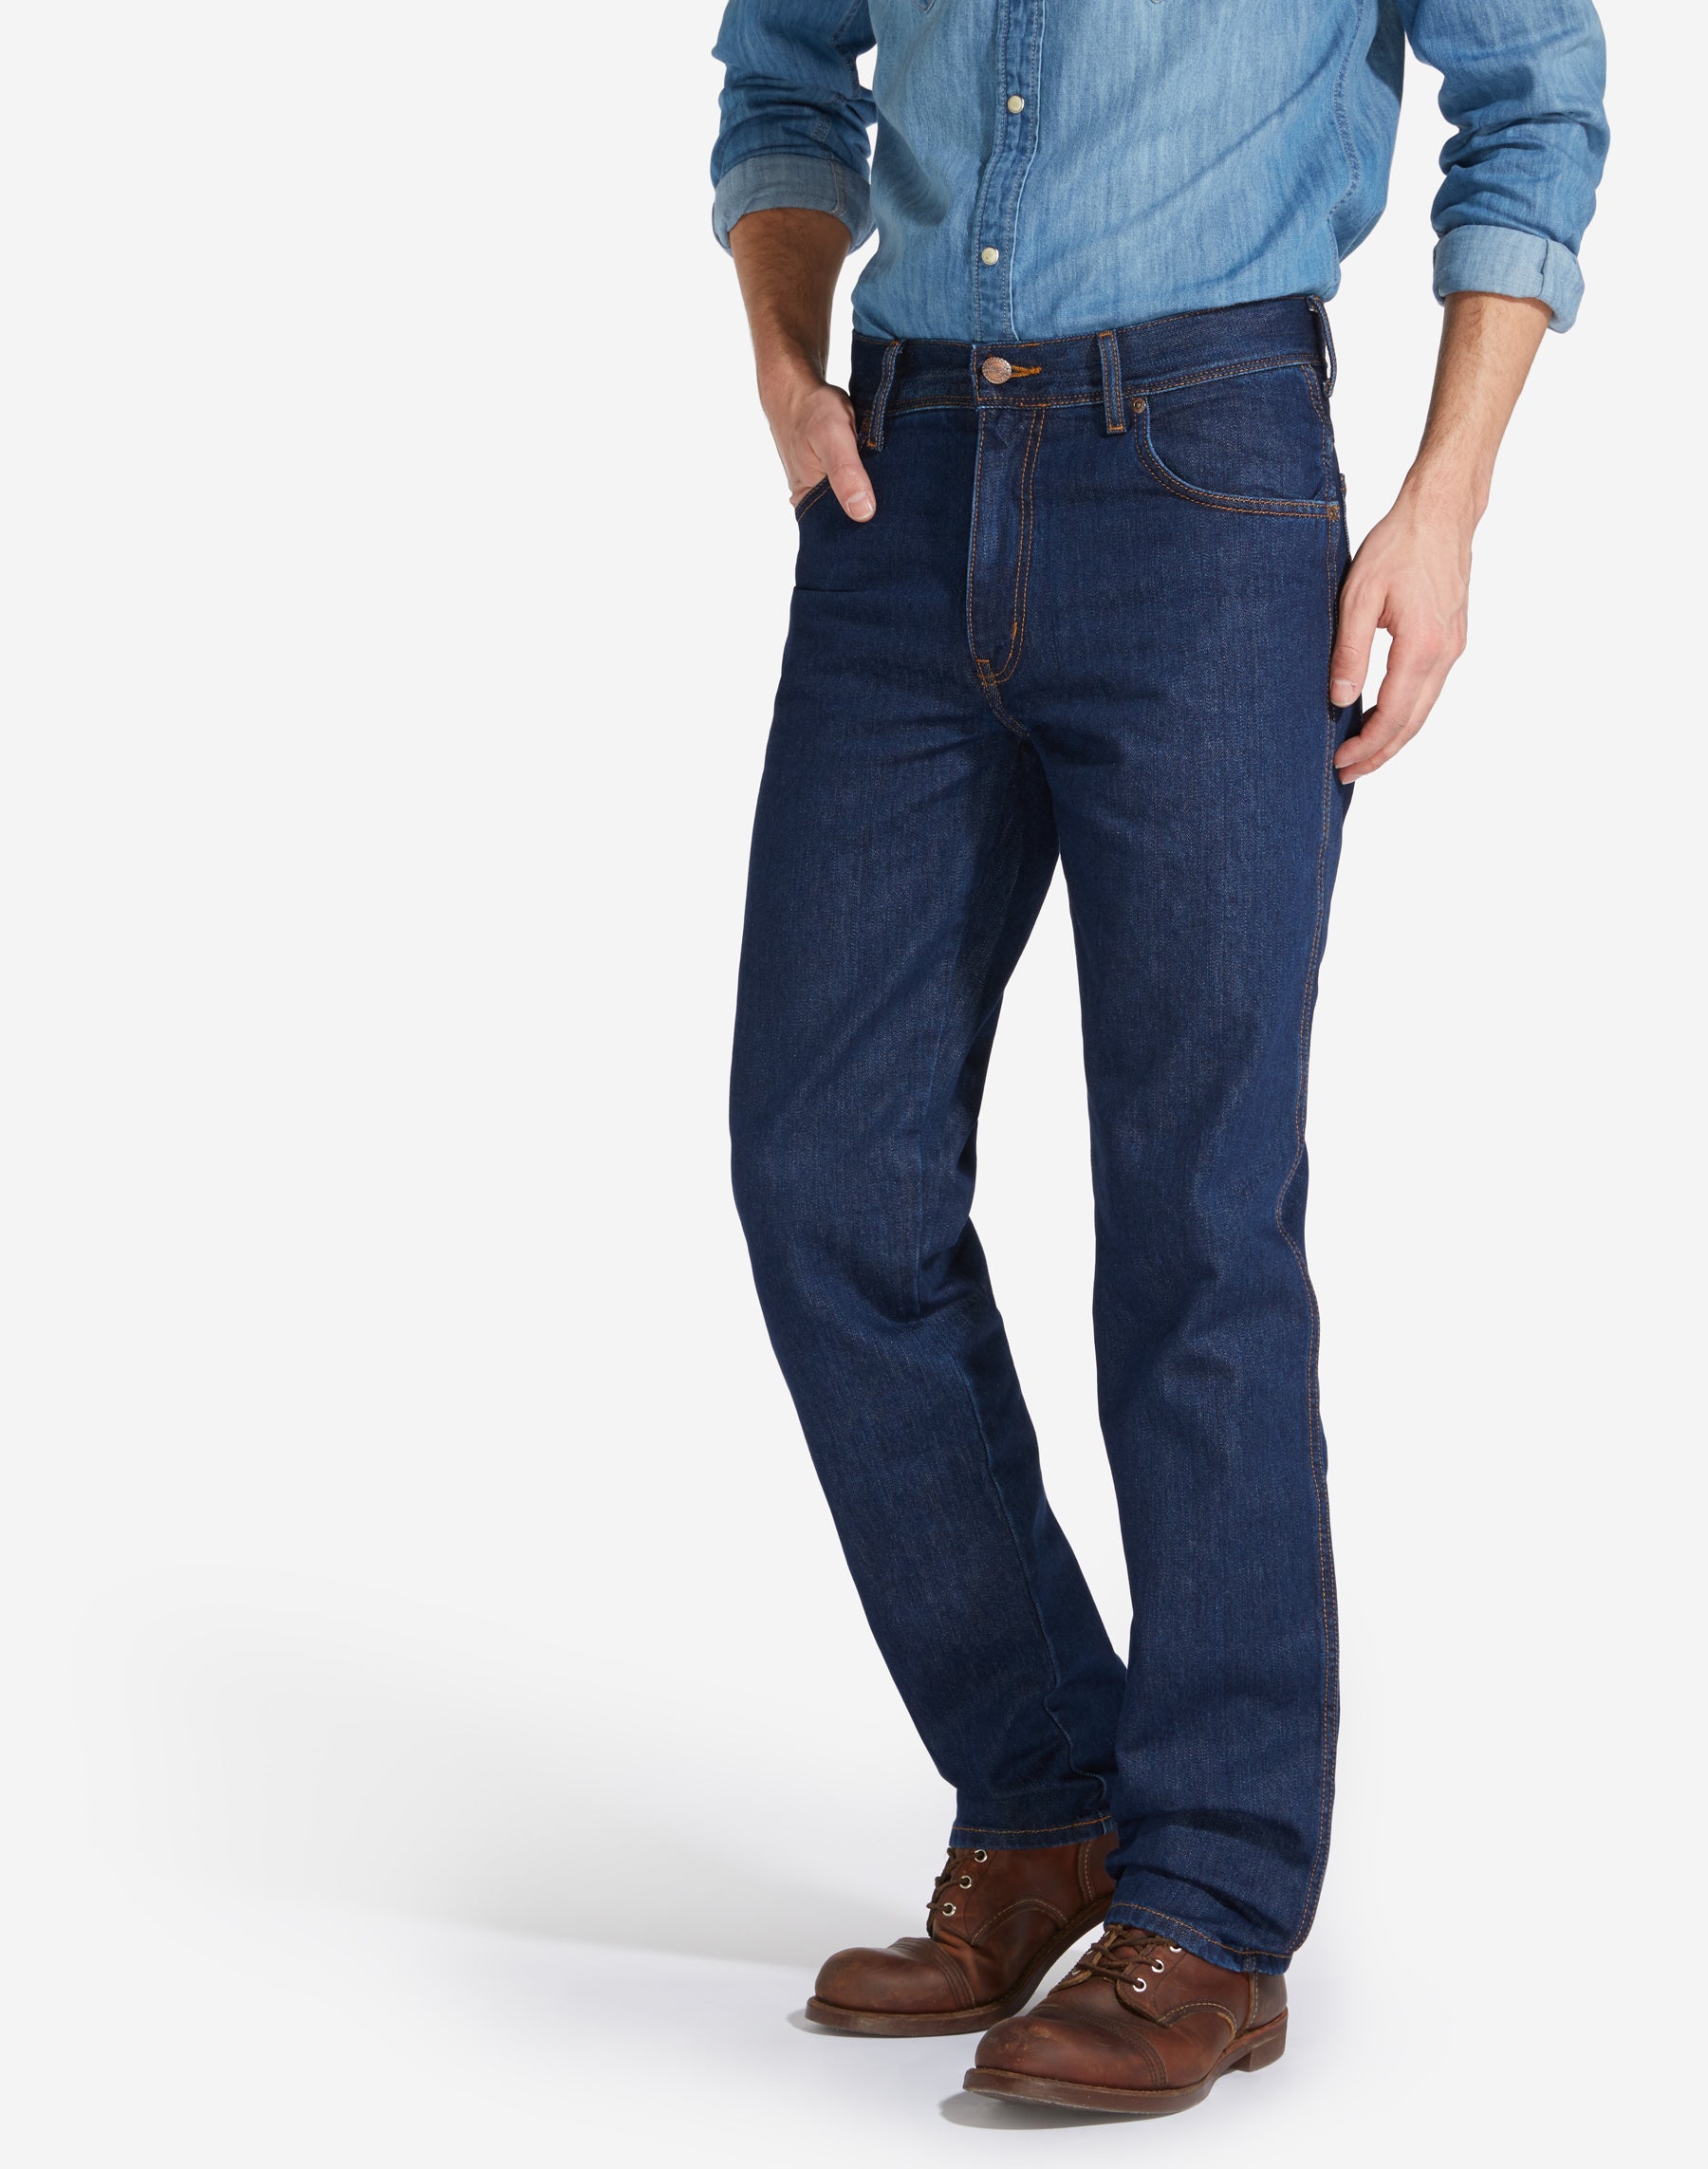 Annoteren herhaling Beperken Wrangler Texas non stretch dark stone – Vegter jeans